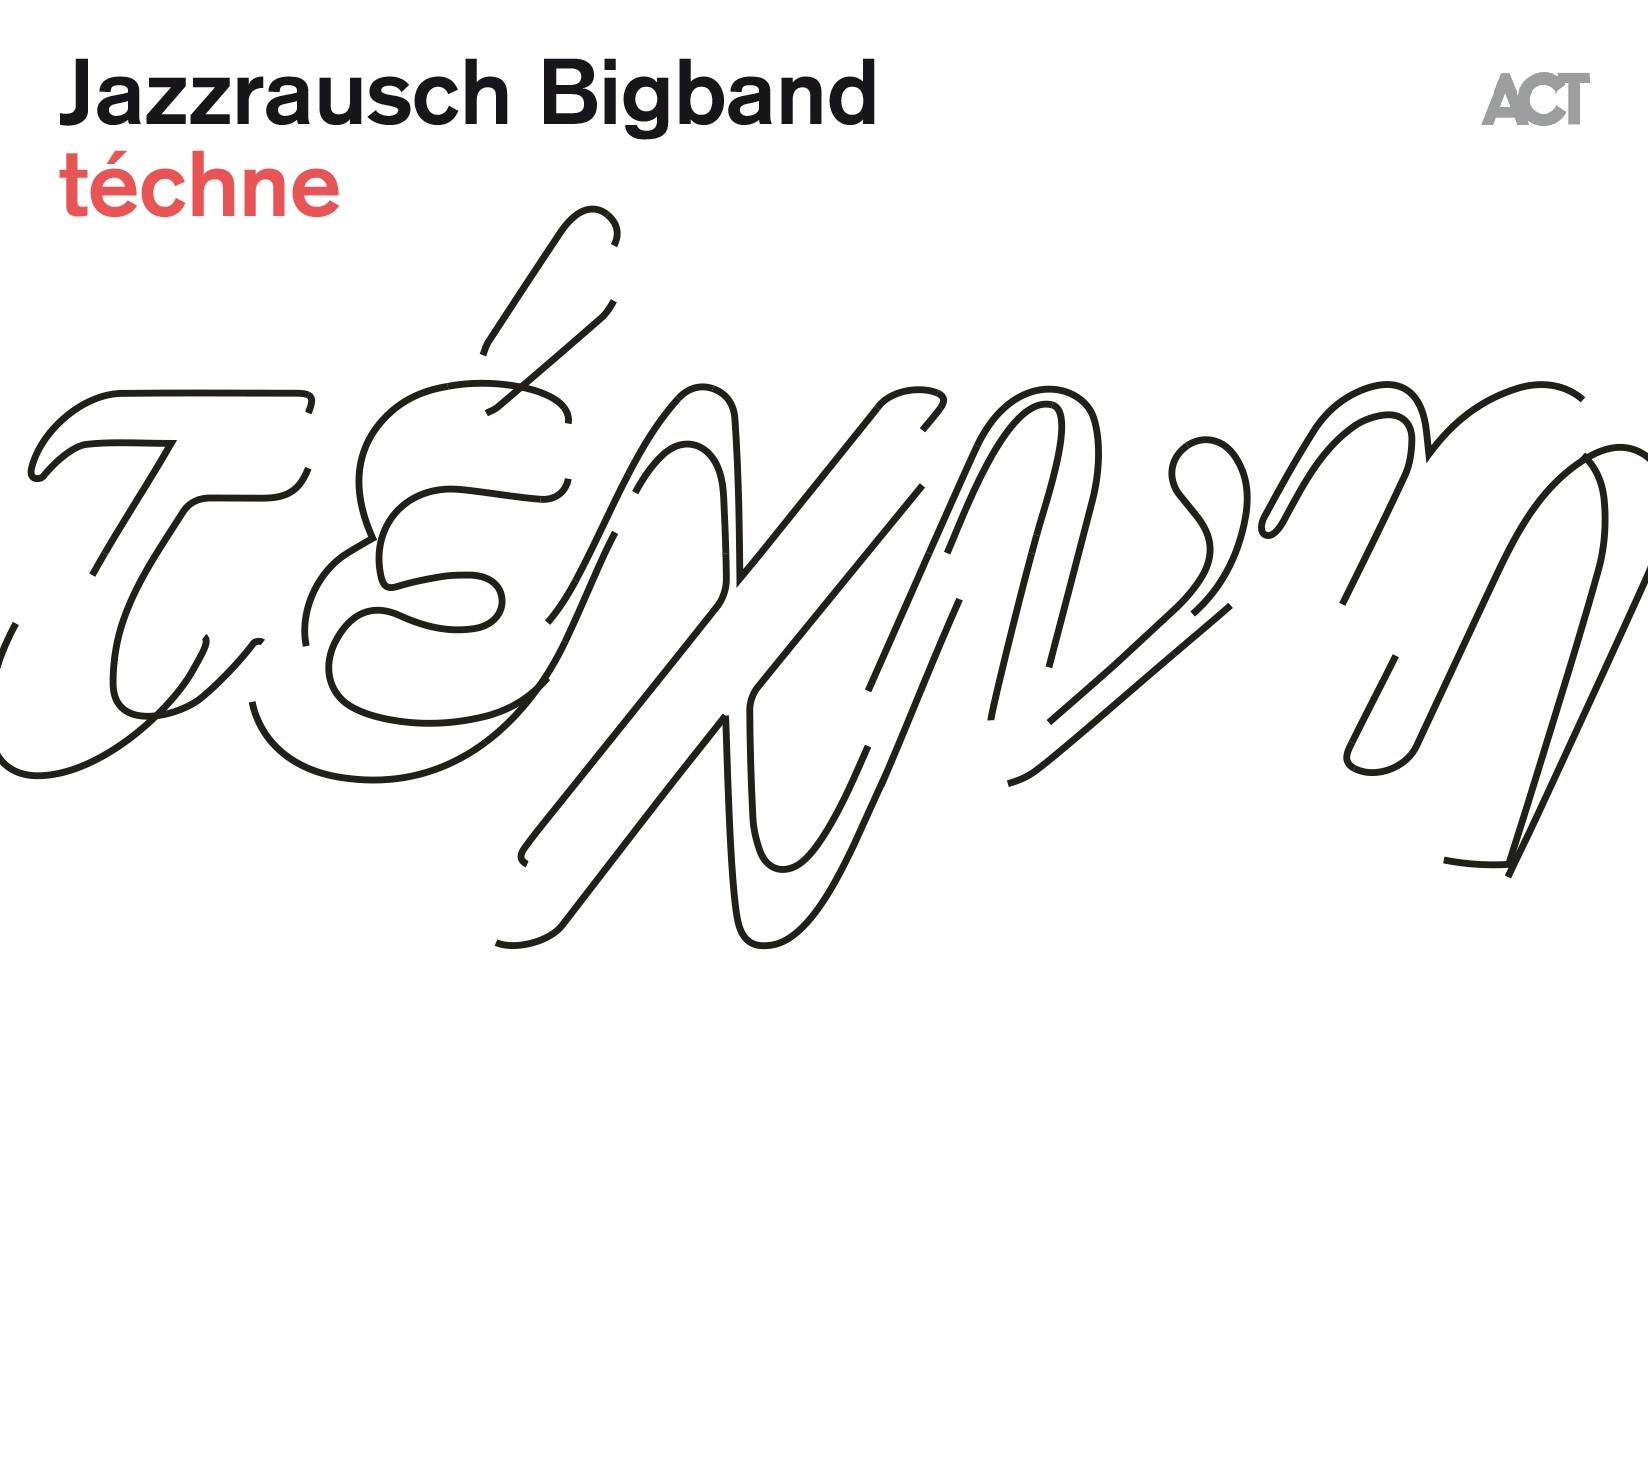 Jazzrausch Bigband - techne (2021) [FLAC 24bit/48kHz]